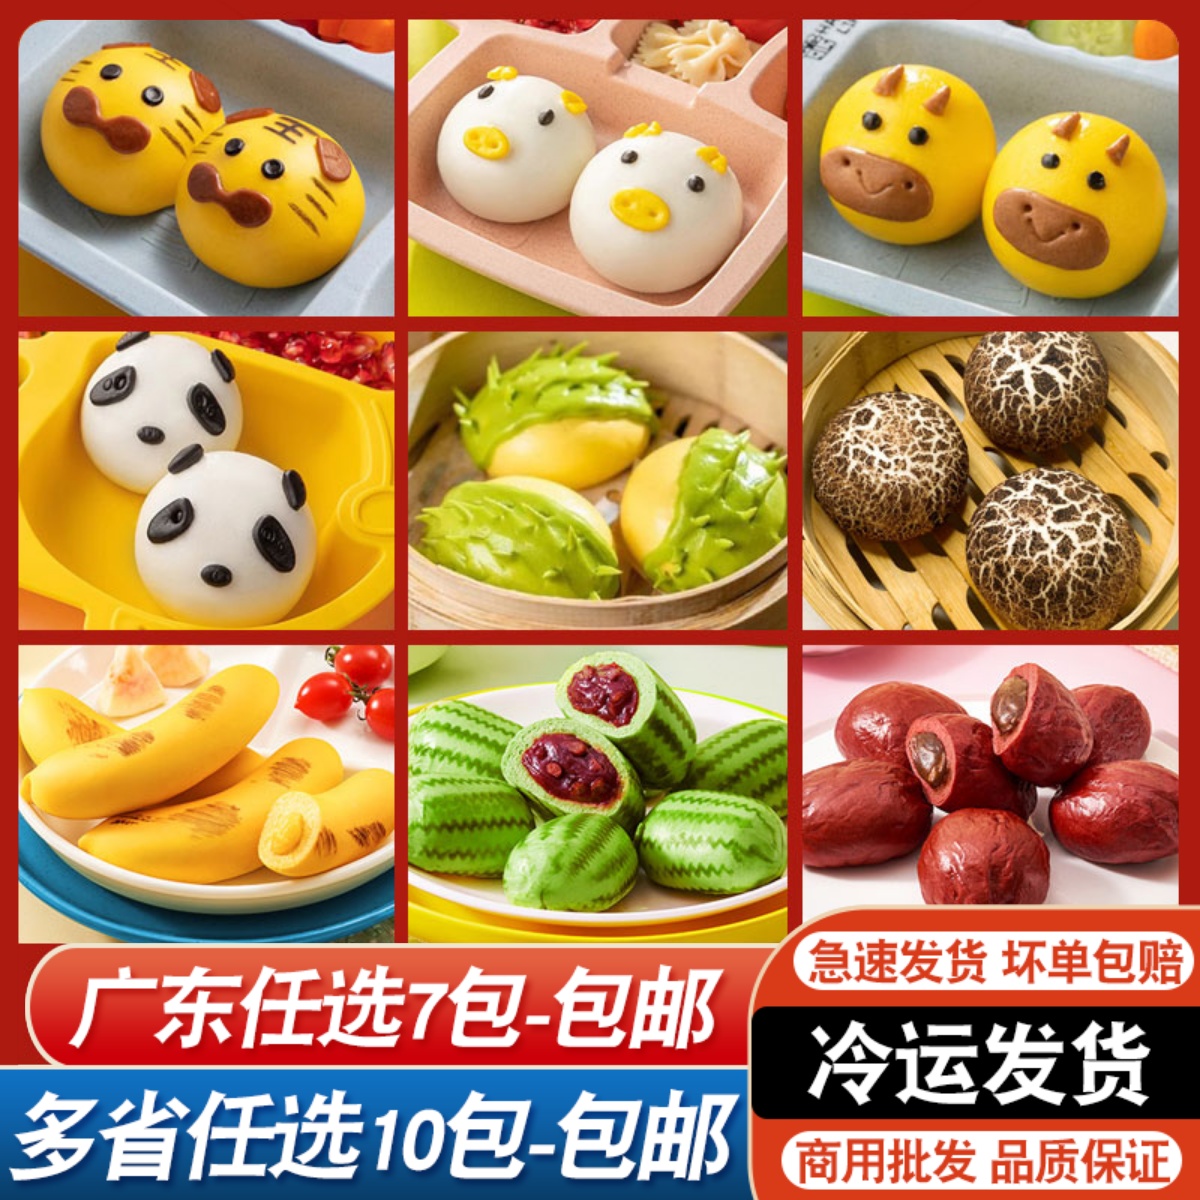 猪猪奶黄包儿童卡通熊猫豆沙包商用动物造型速冻早餐香蕉包榴莲包